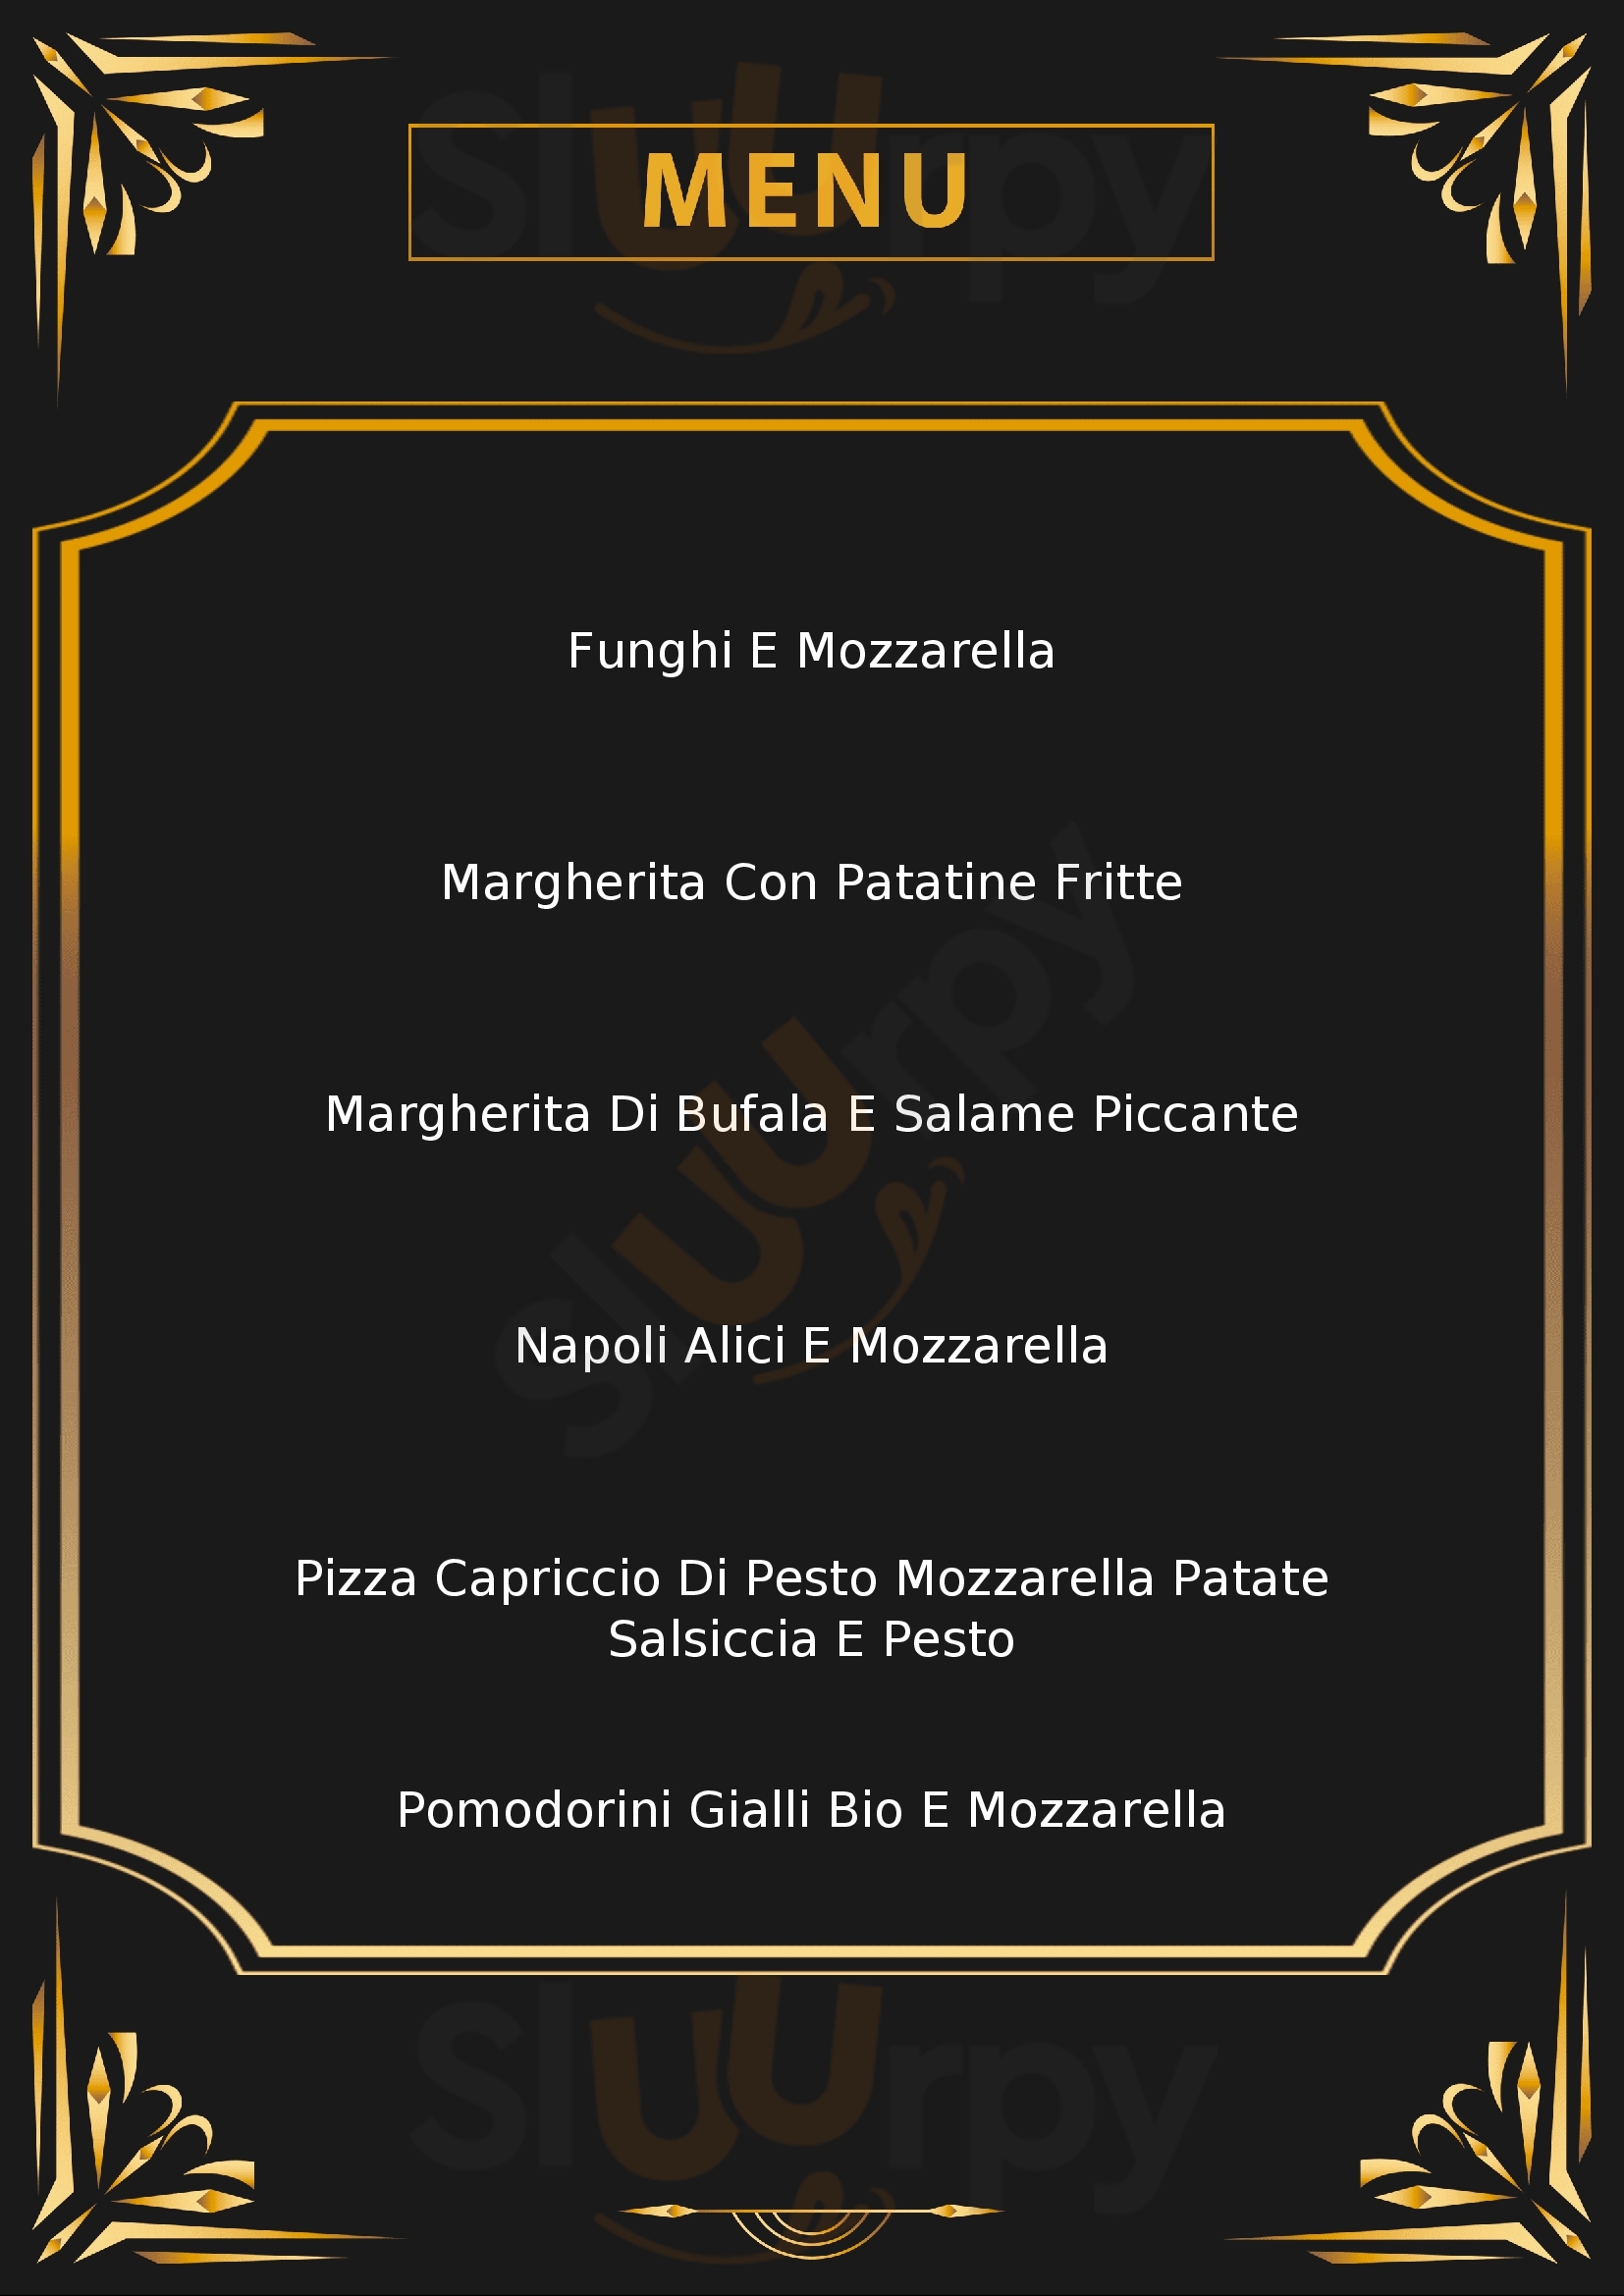 Ferdy Pizza Infernetto menù 1 pagina